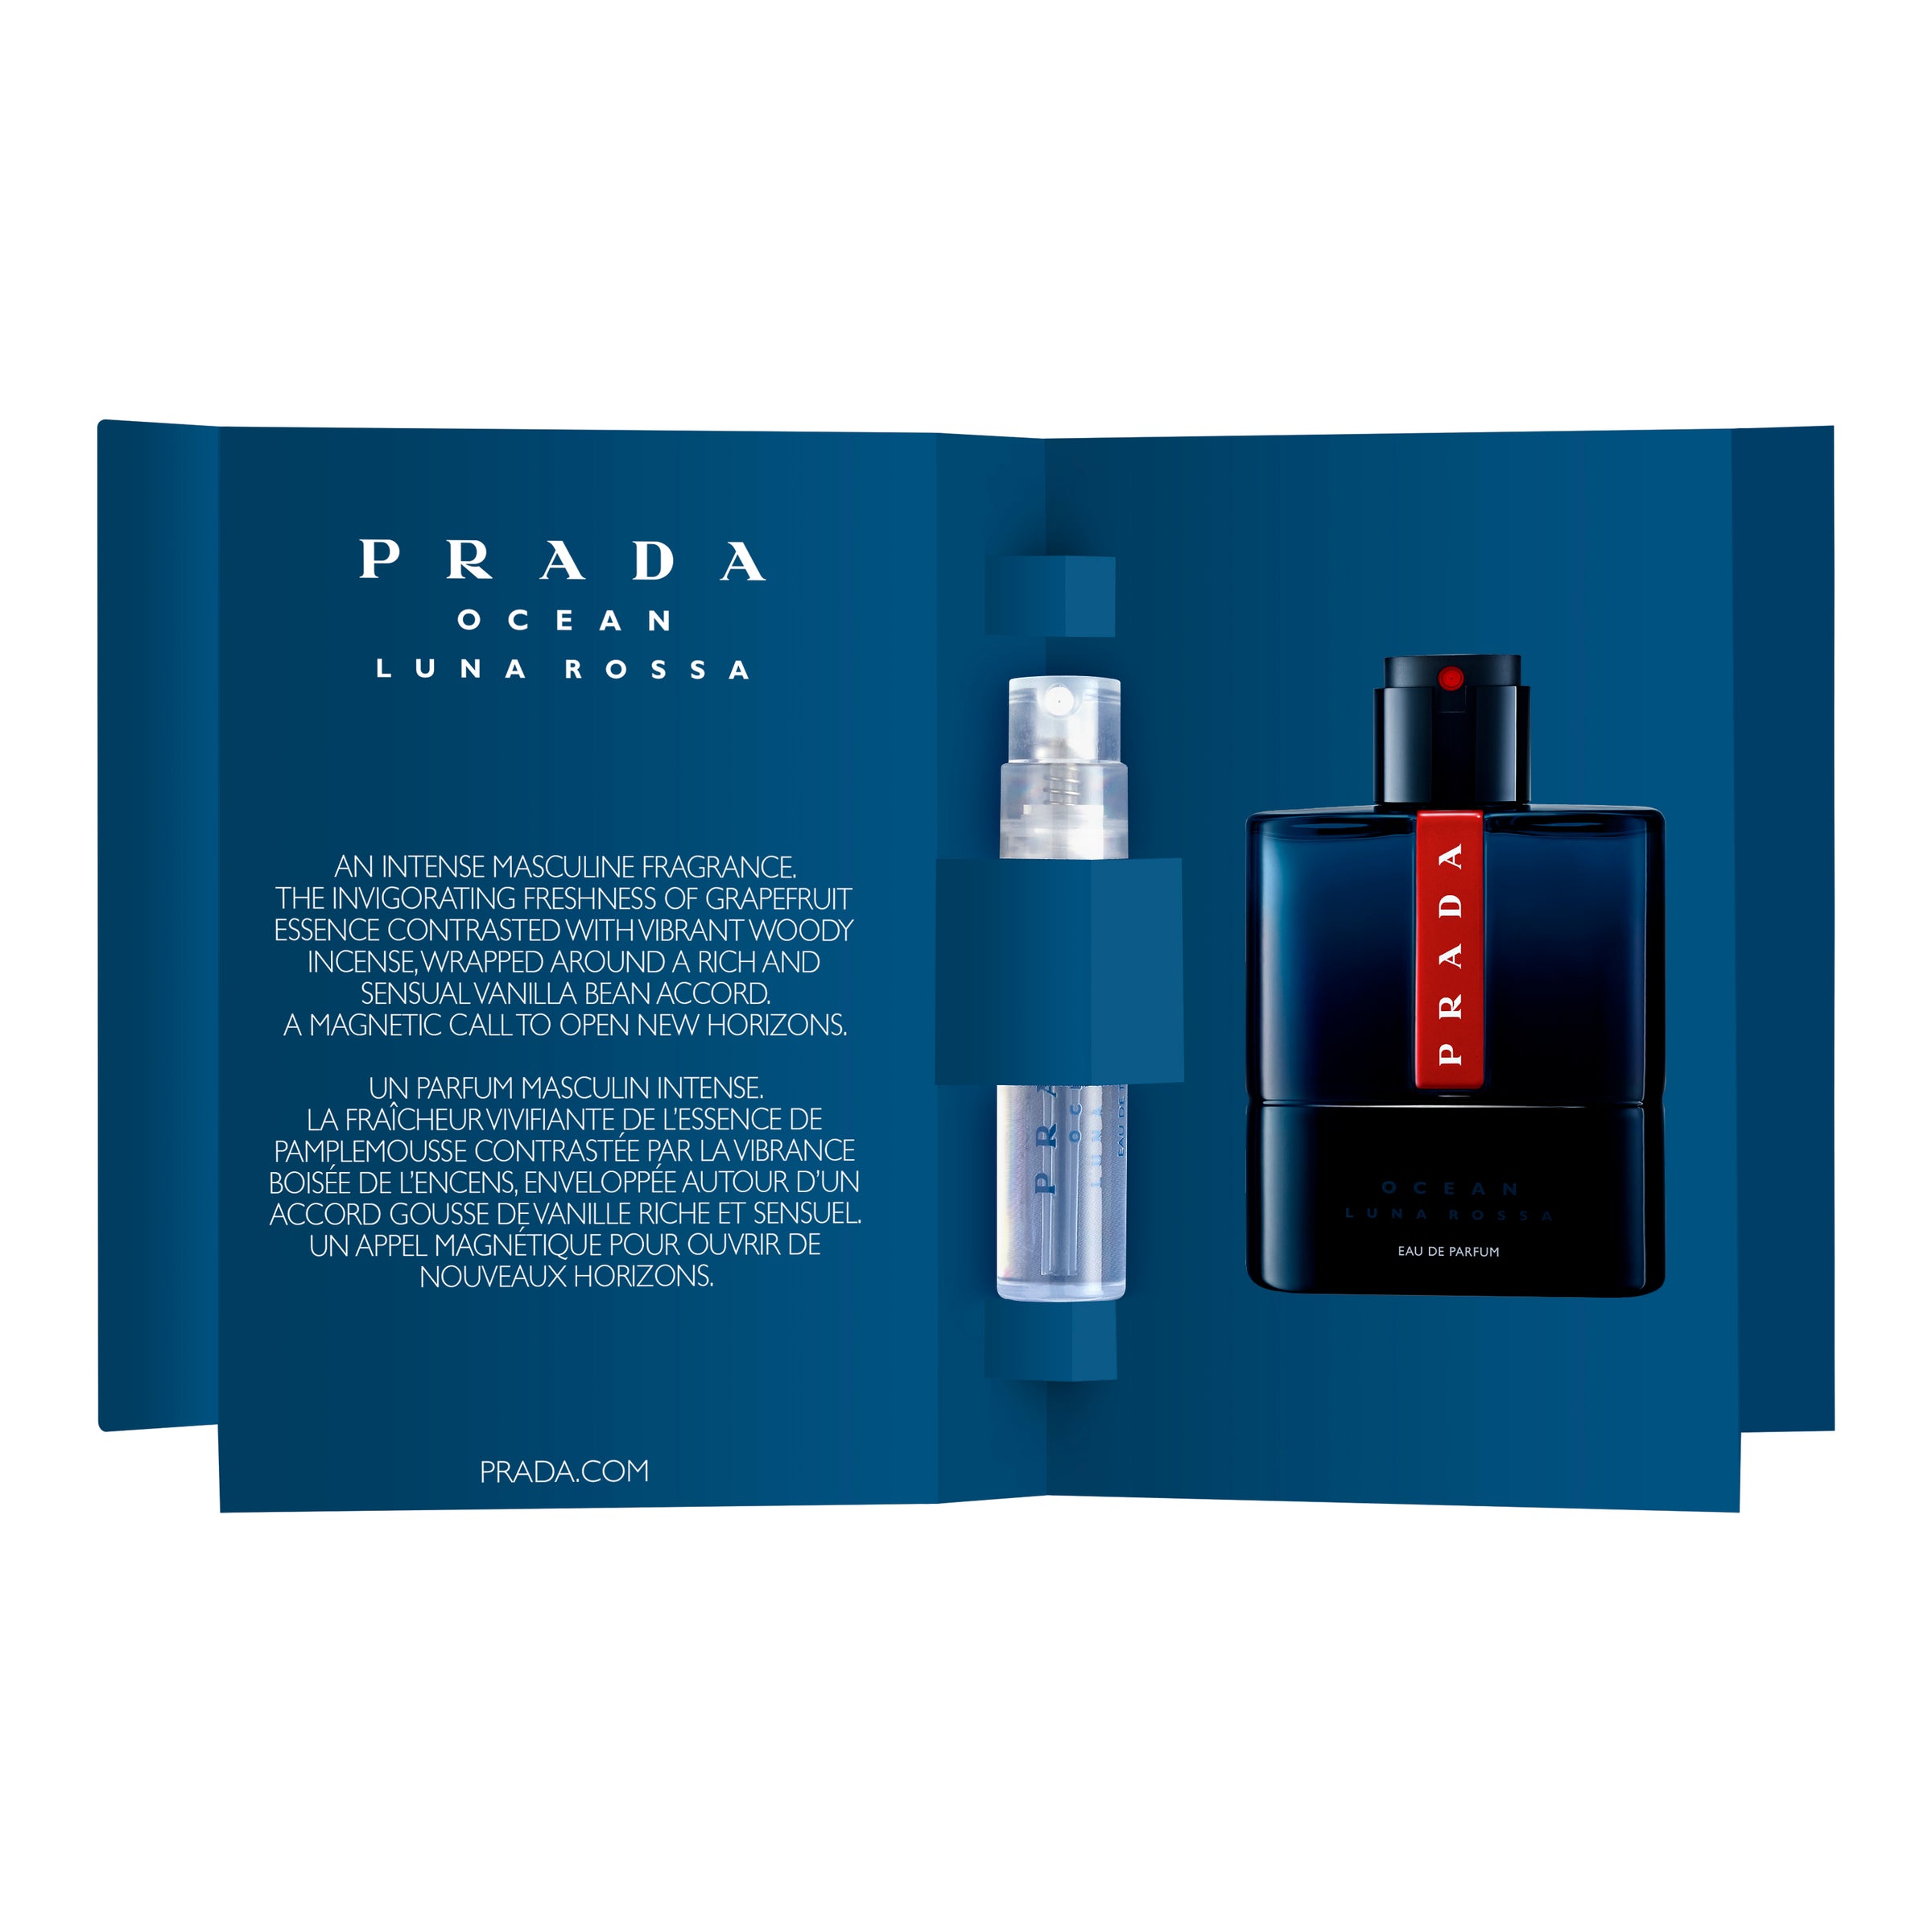 Prada Luna Rossa Ocean Eau de Parfum (5x1,2ml) – Reviewclub